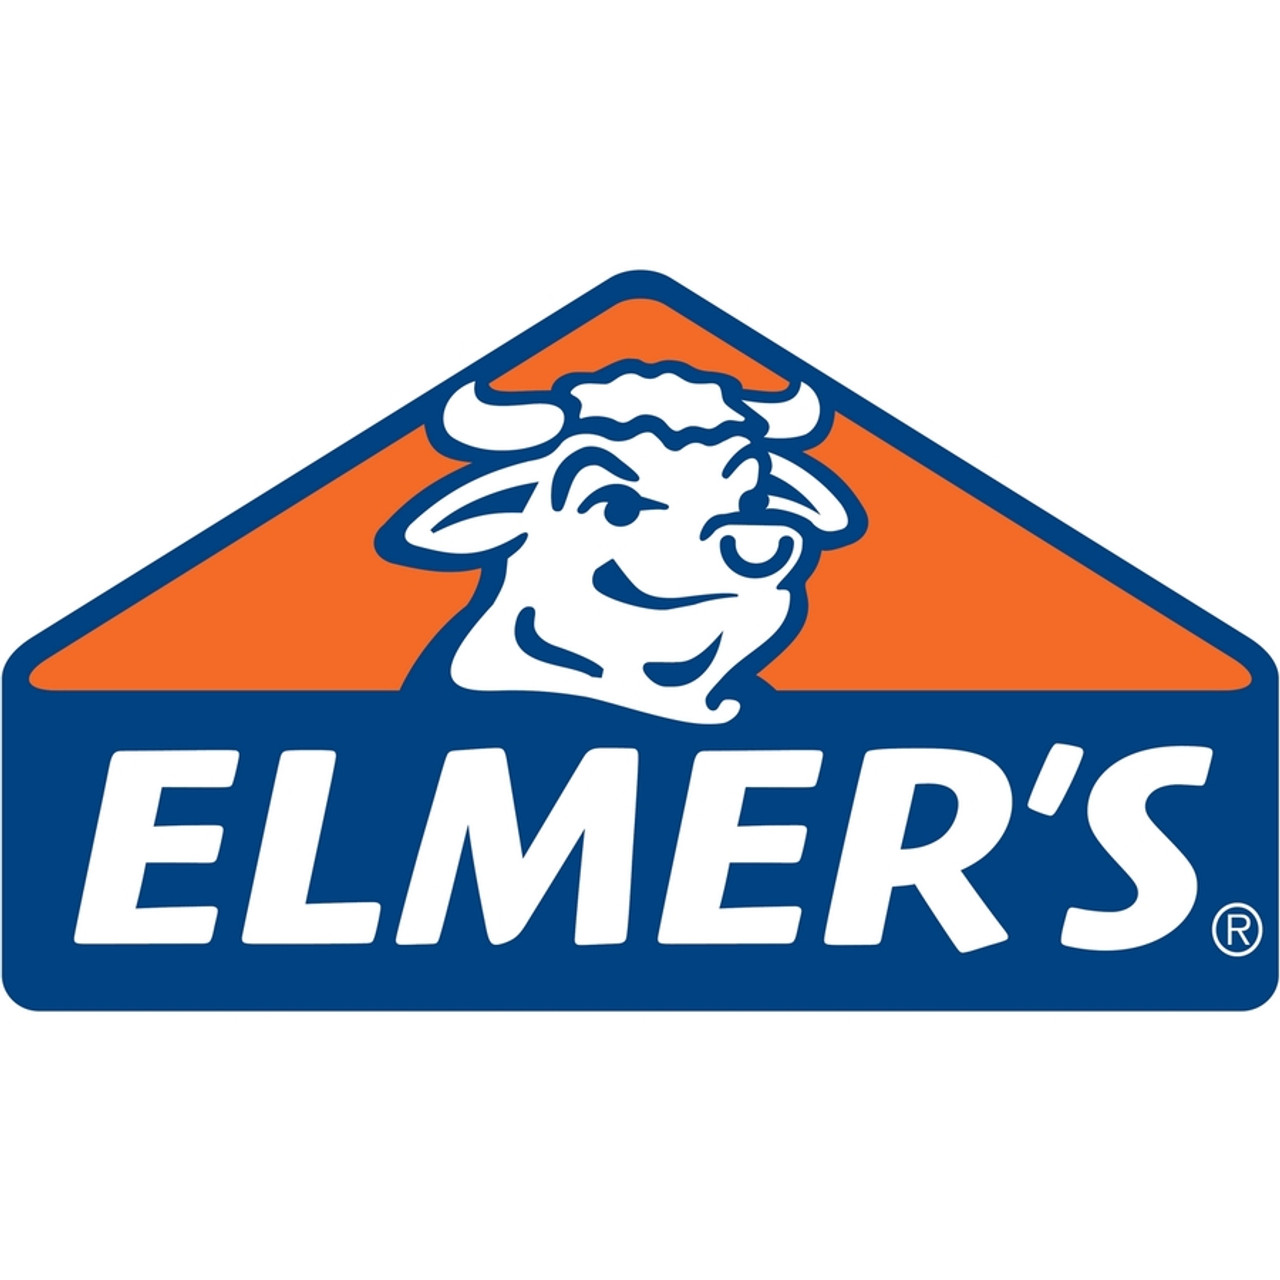 Elmer's Washable Nontoxic Glue Sticks